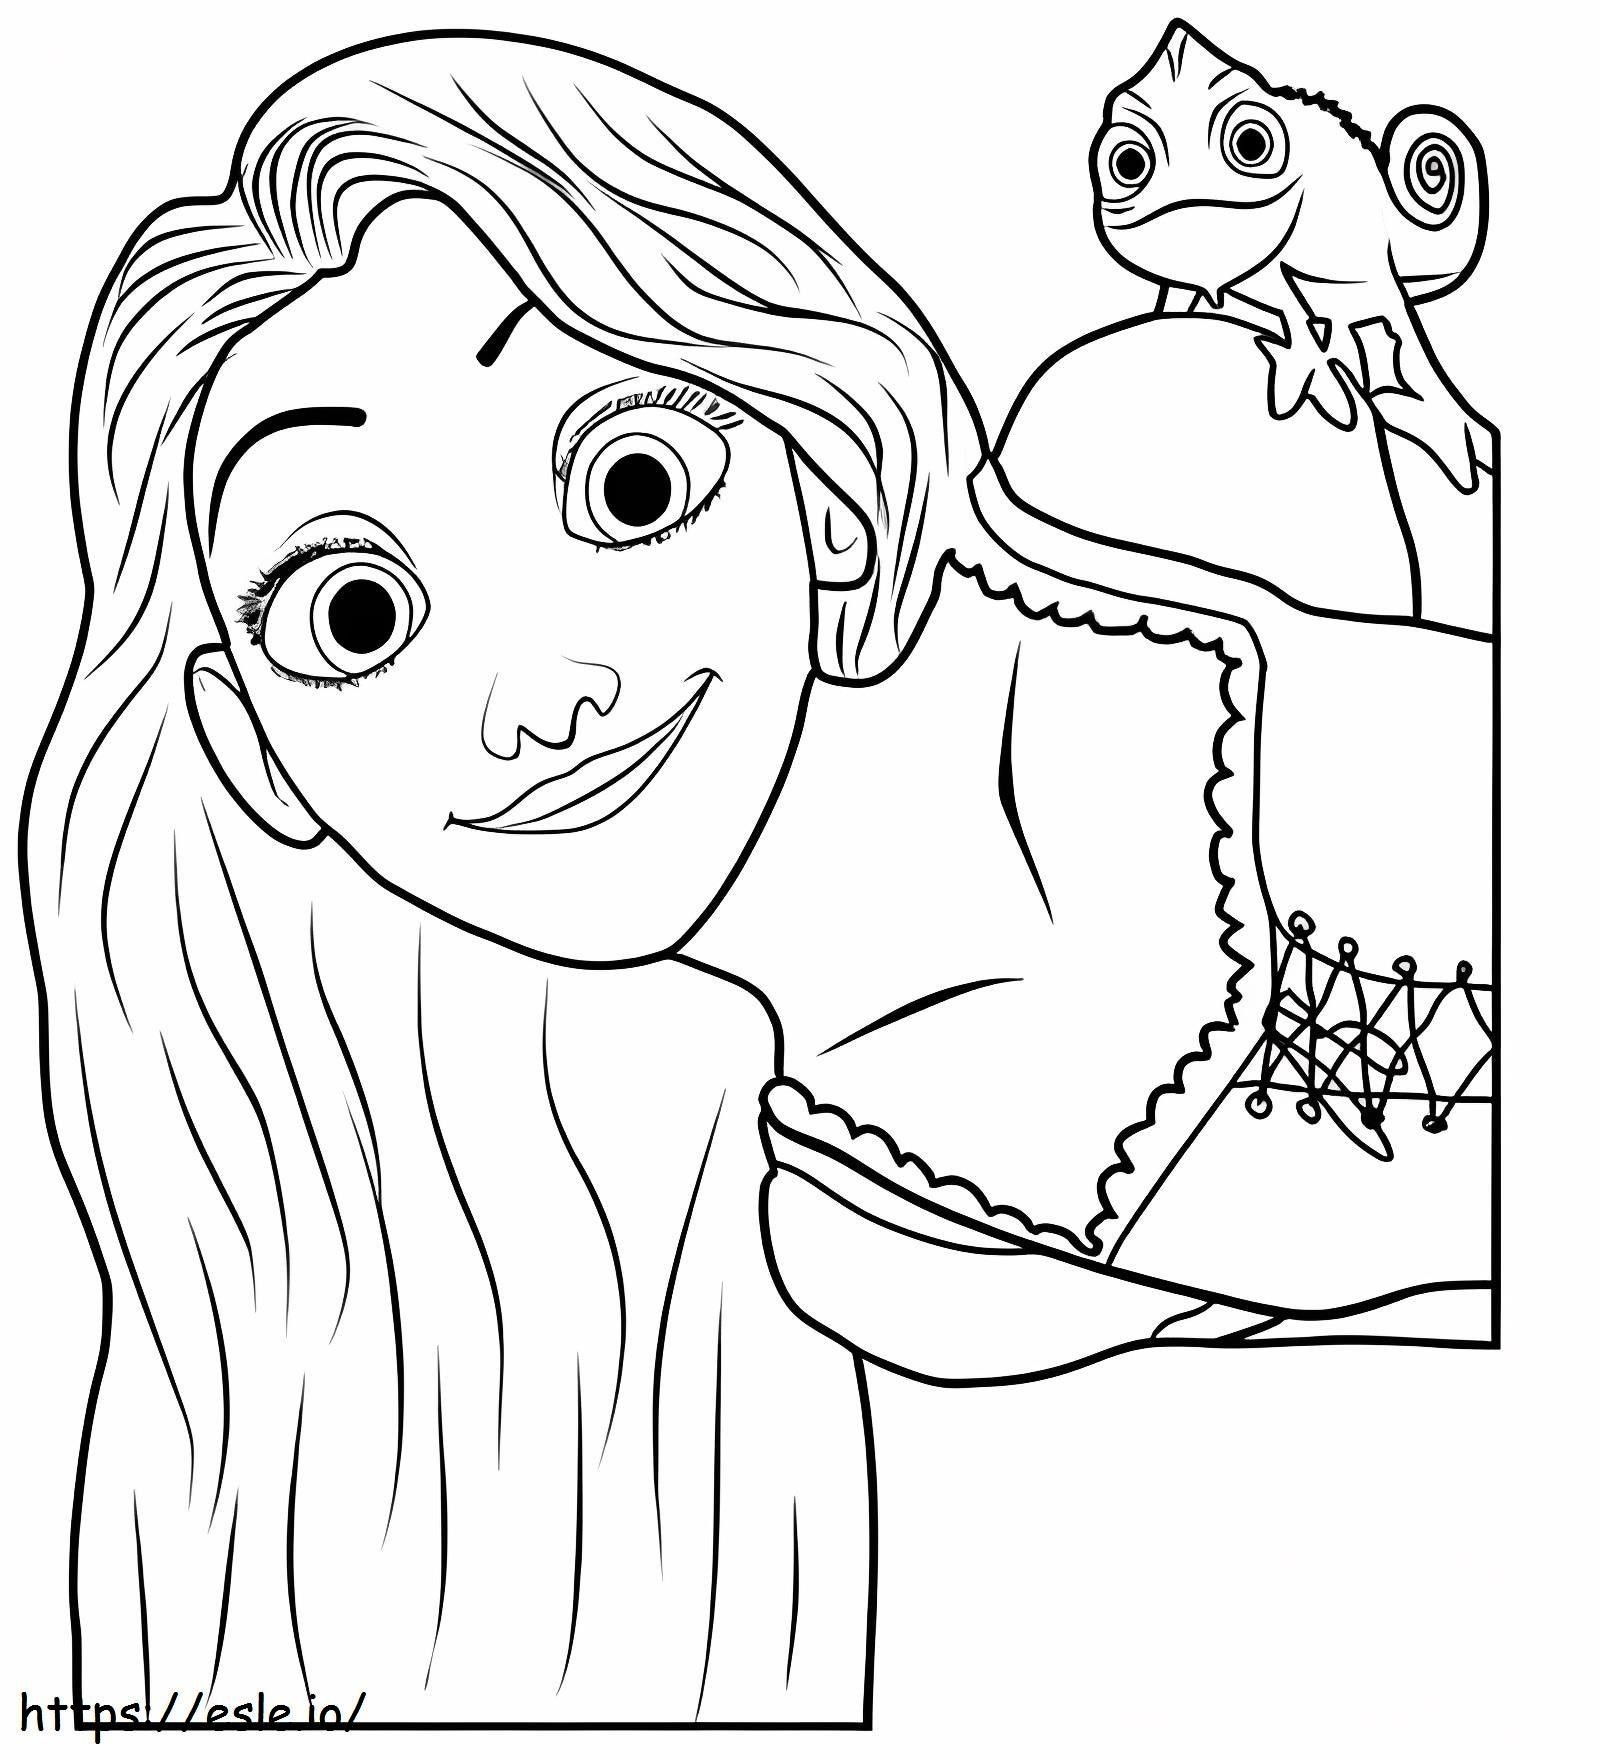 Divertente Rapunzel e Geco da colorare